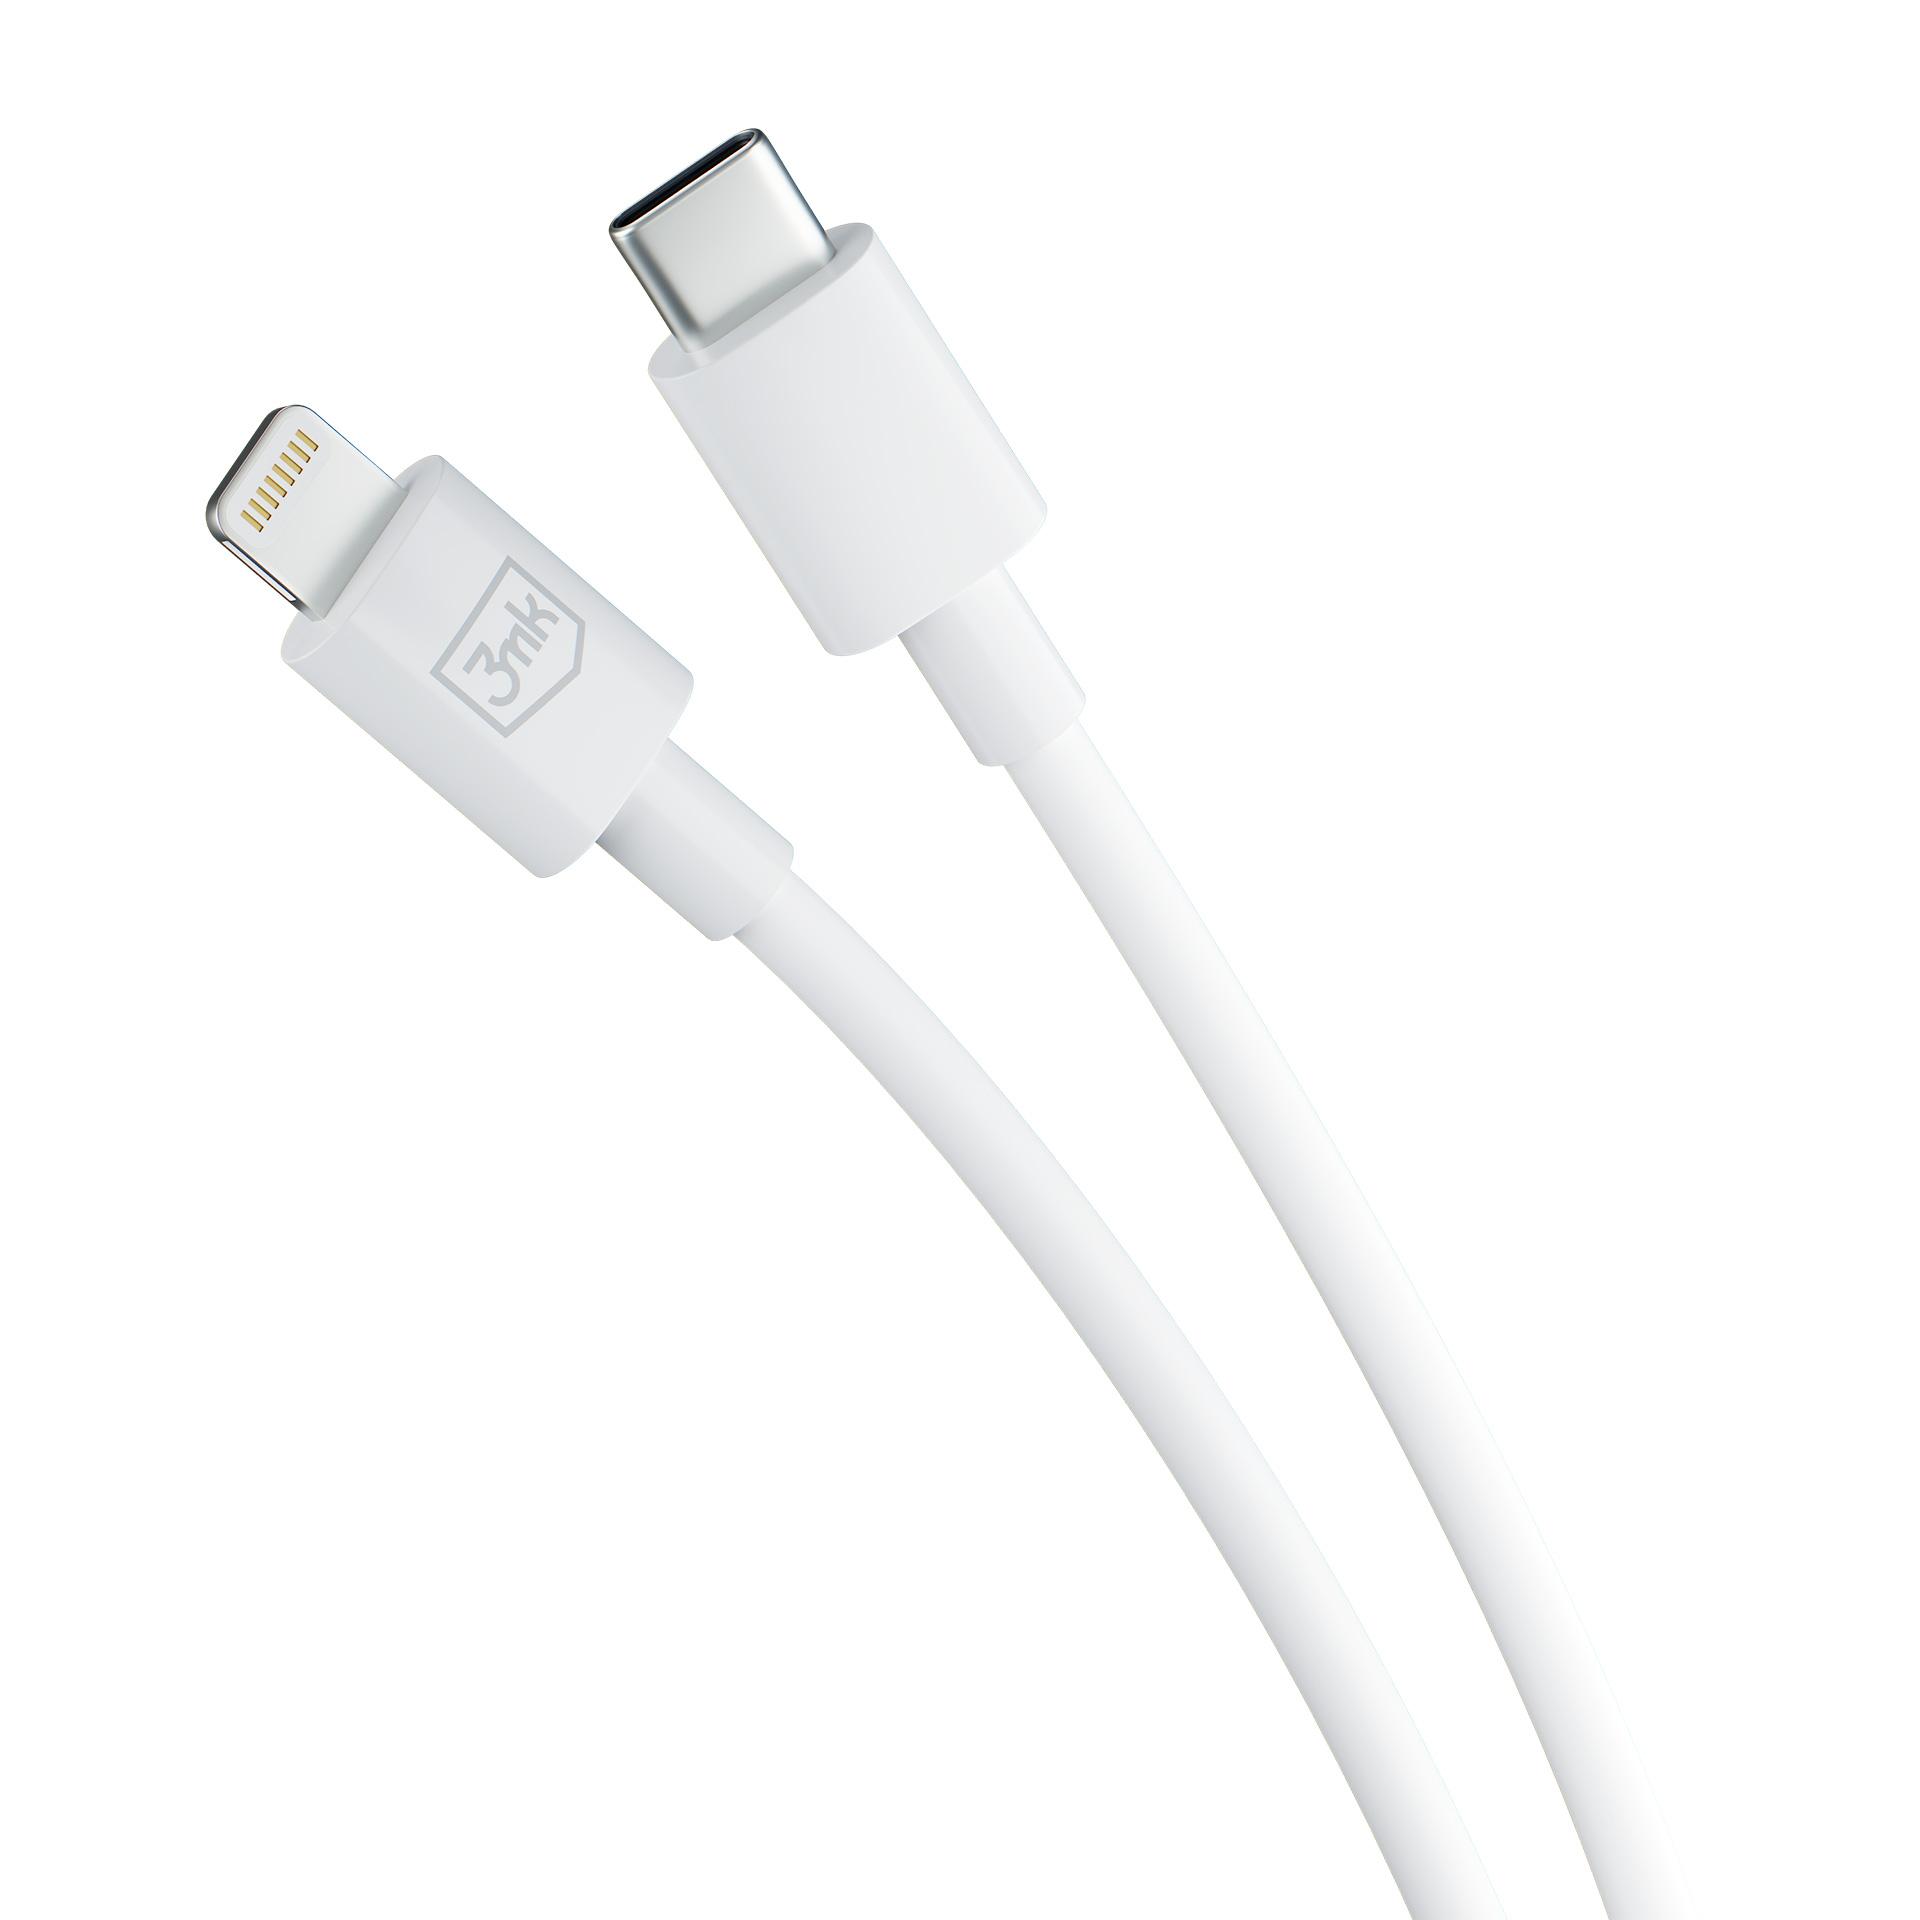 3mk Kabel Hyper Cable USB-C do Lightning 20W 1.2m biały